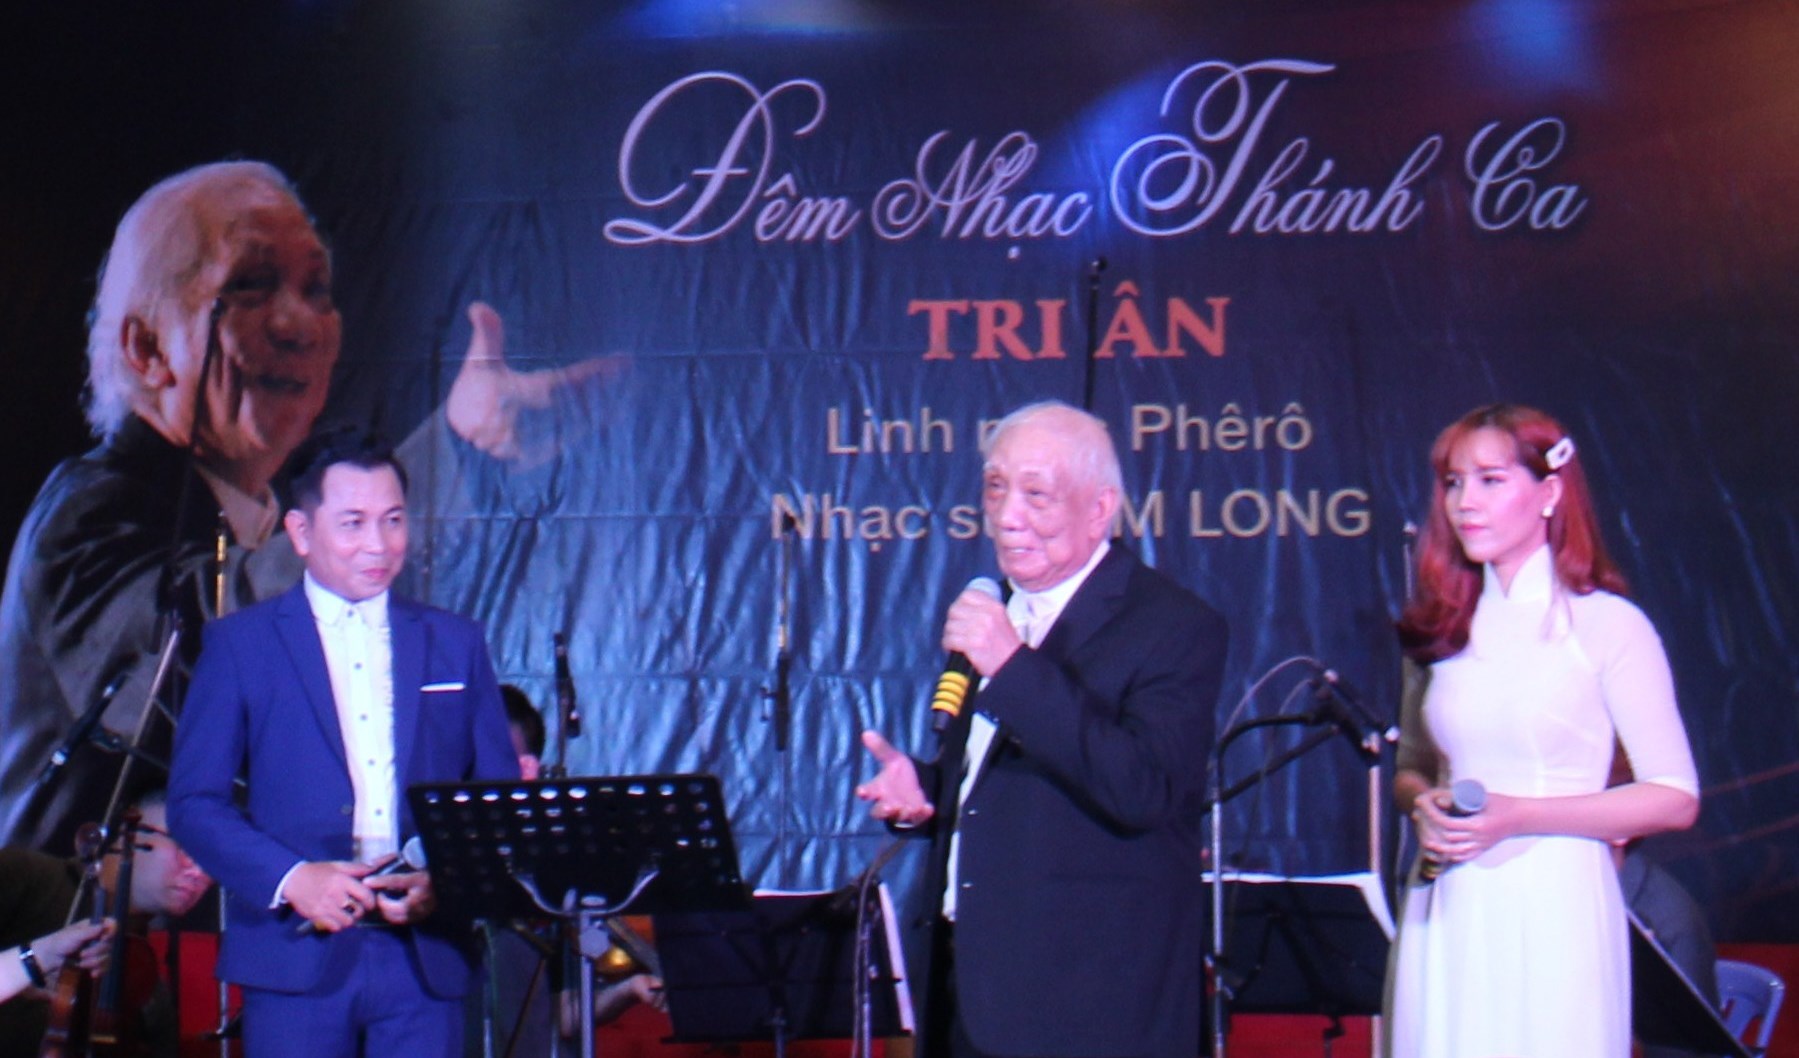 Ðêm nhạc thánh ca tri ân linh mục nhạc sư Kim Long